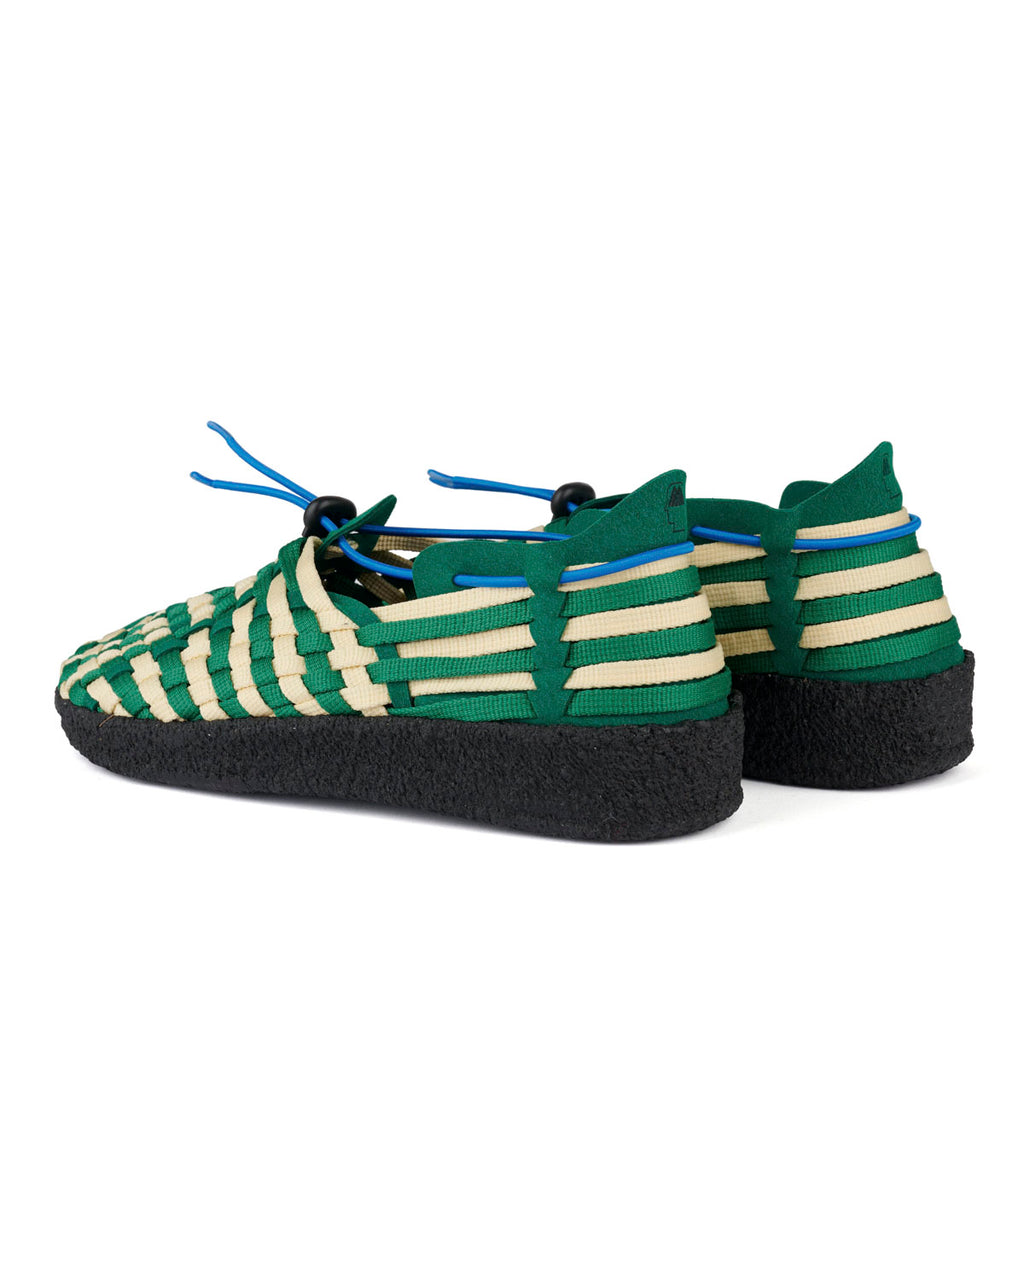 Women's Malibu Latigo Woven Shoe - Green/Natural/Black 3